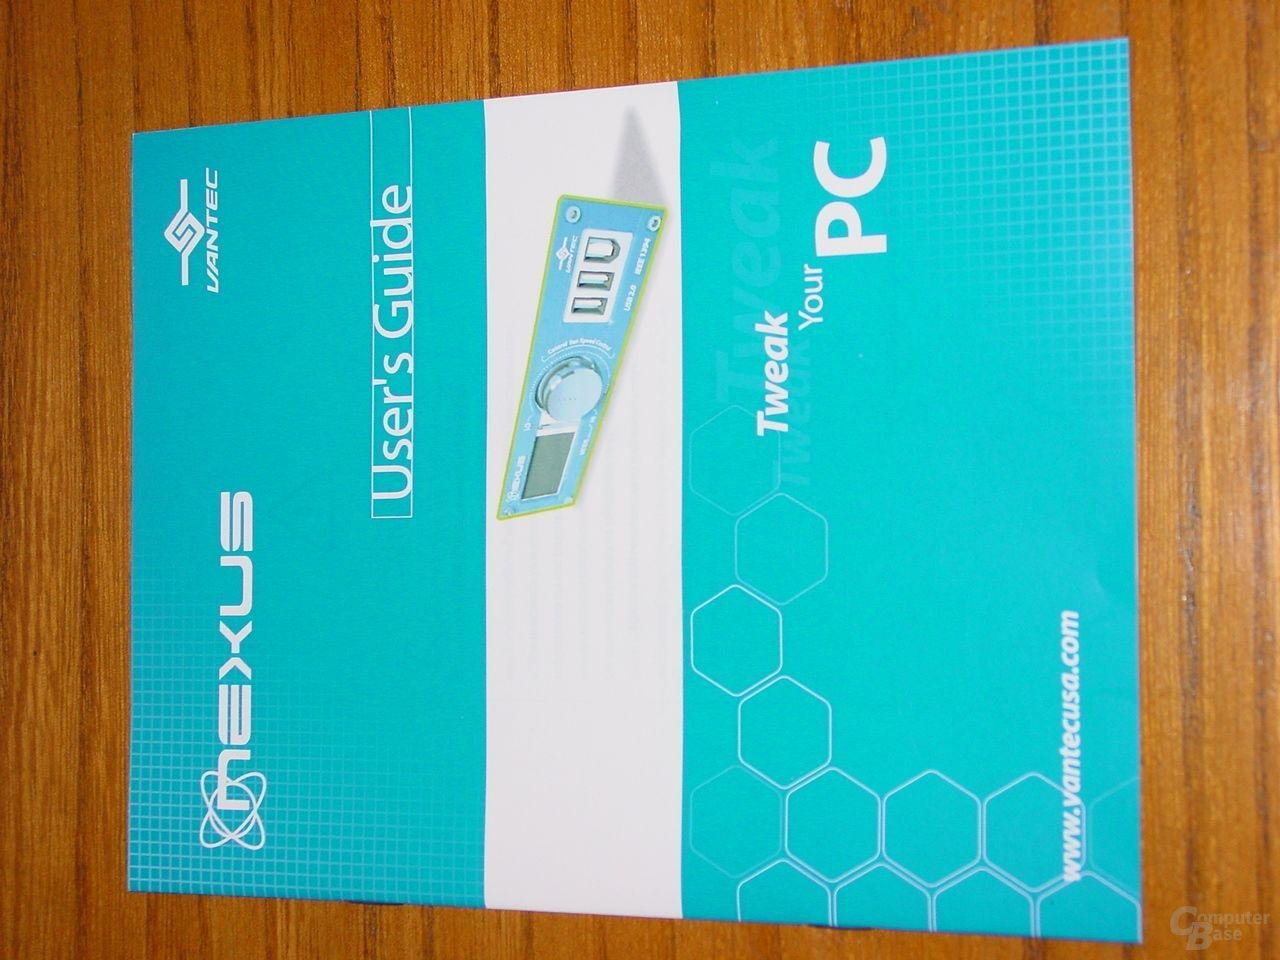 NXP-101 - Handbuch